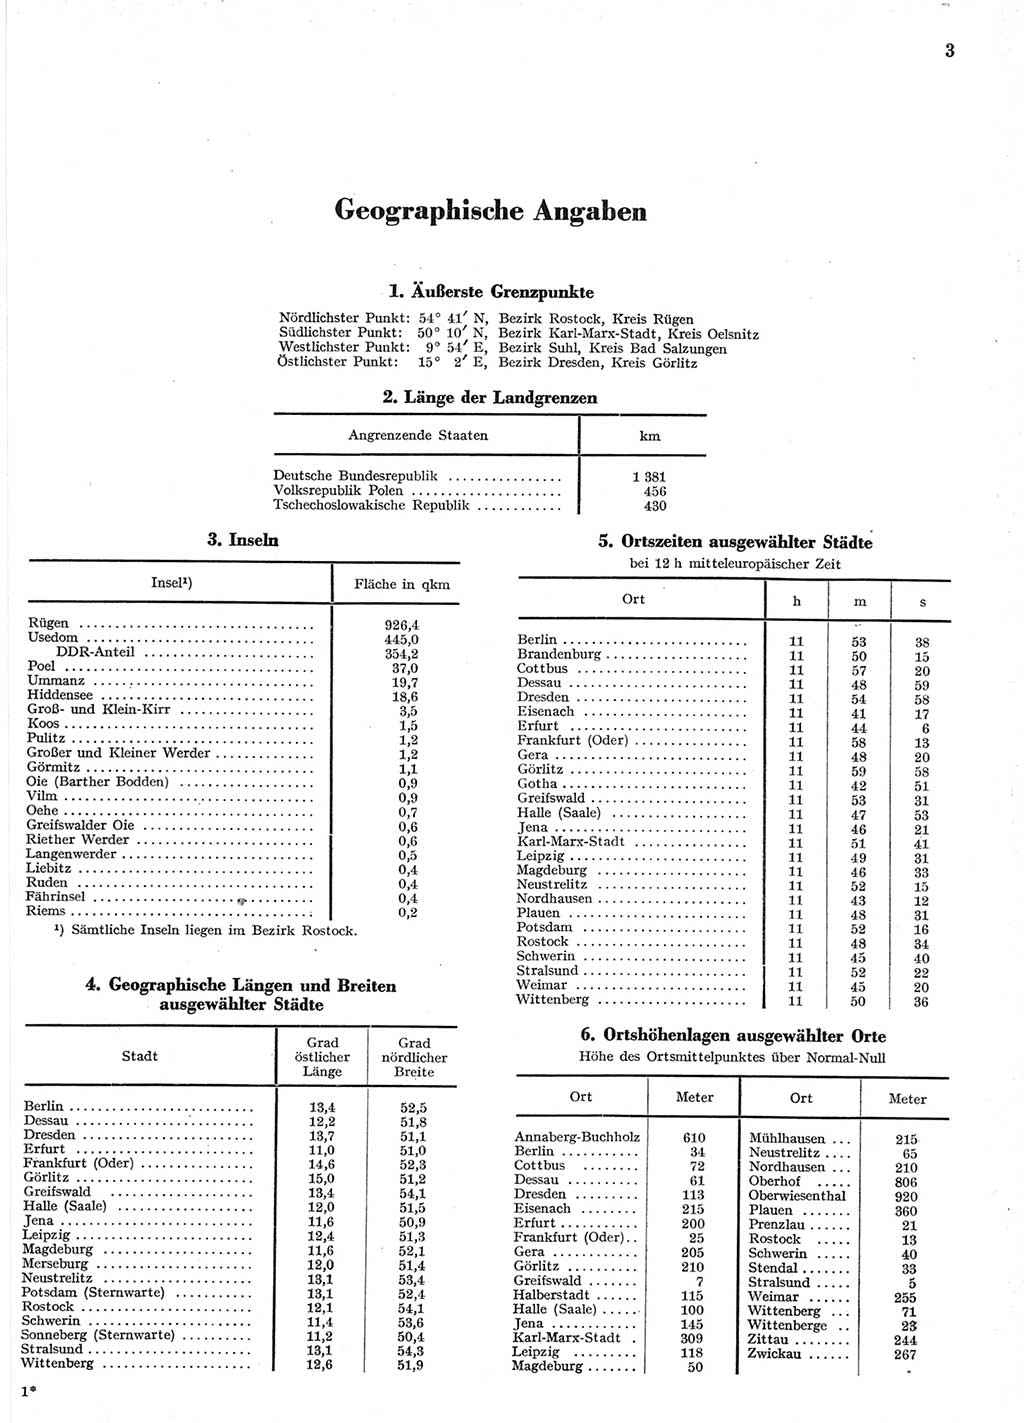 Statistisches Jahrbuch der Deutschen Demokratischen Republik (DDR) 1958, Seite 3 (Stat. Jb. DDR 1958, S. 3)